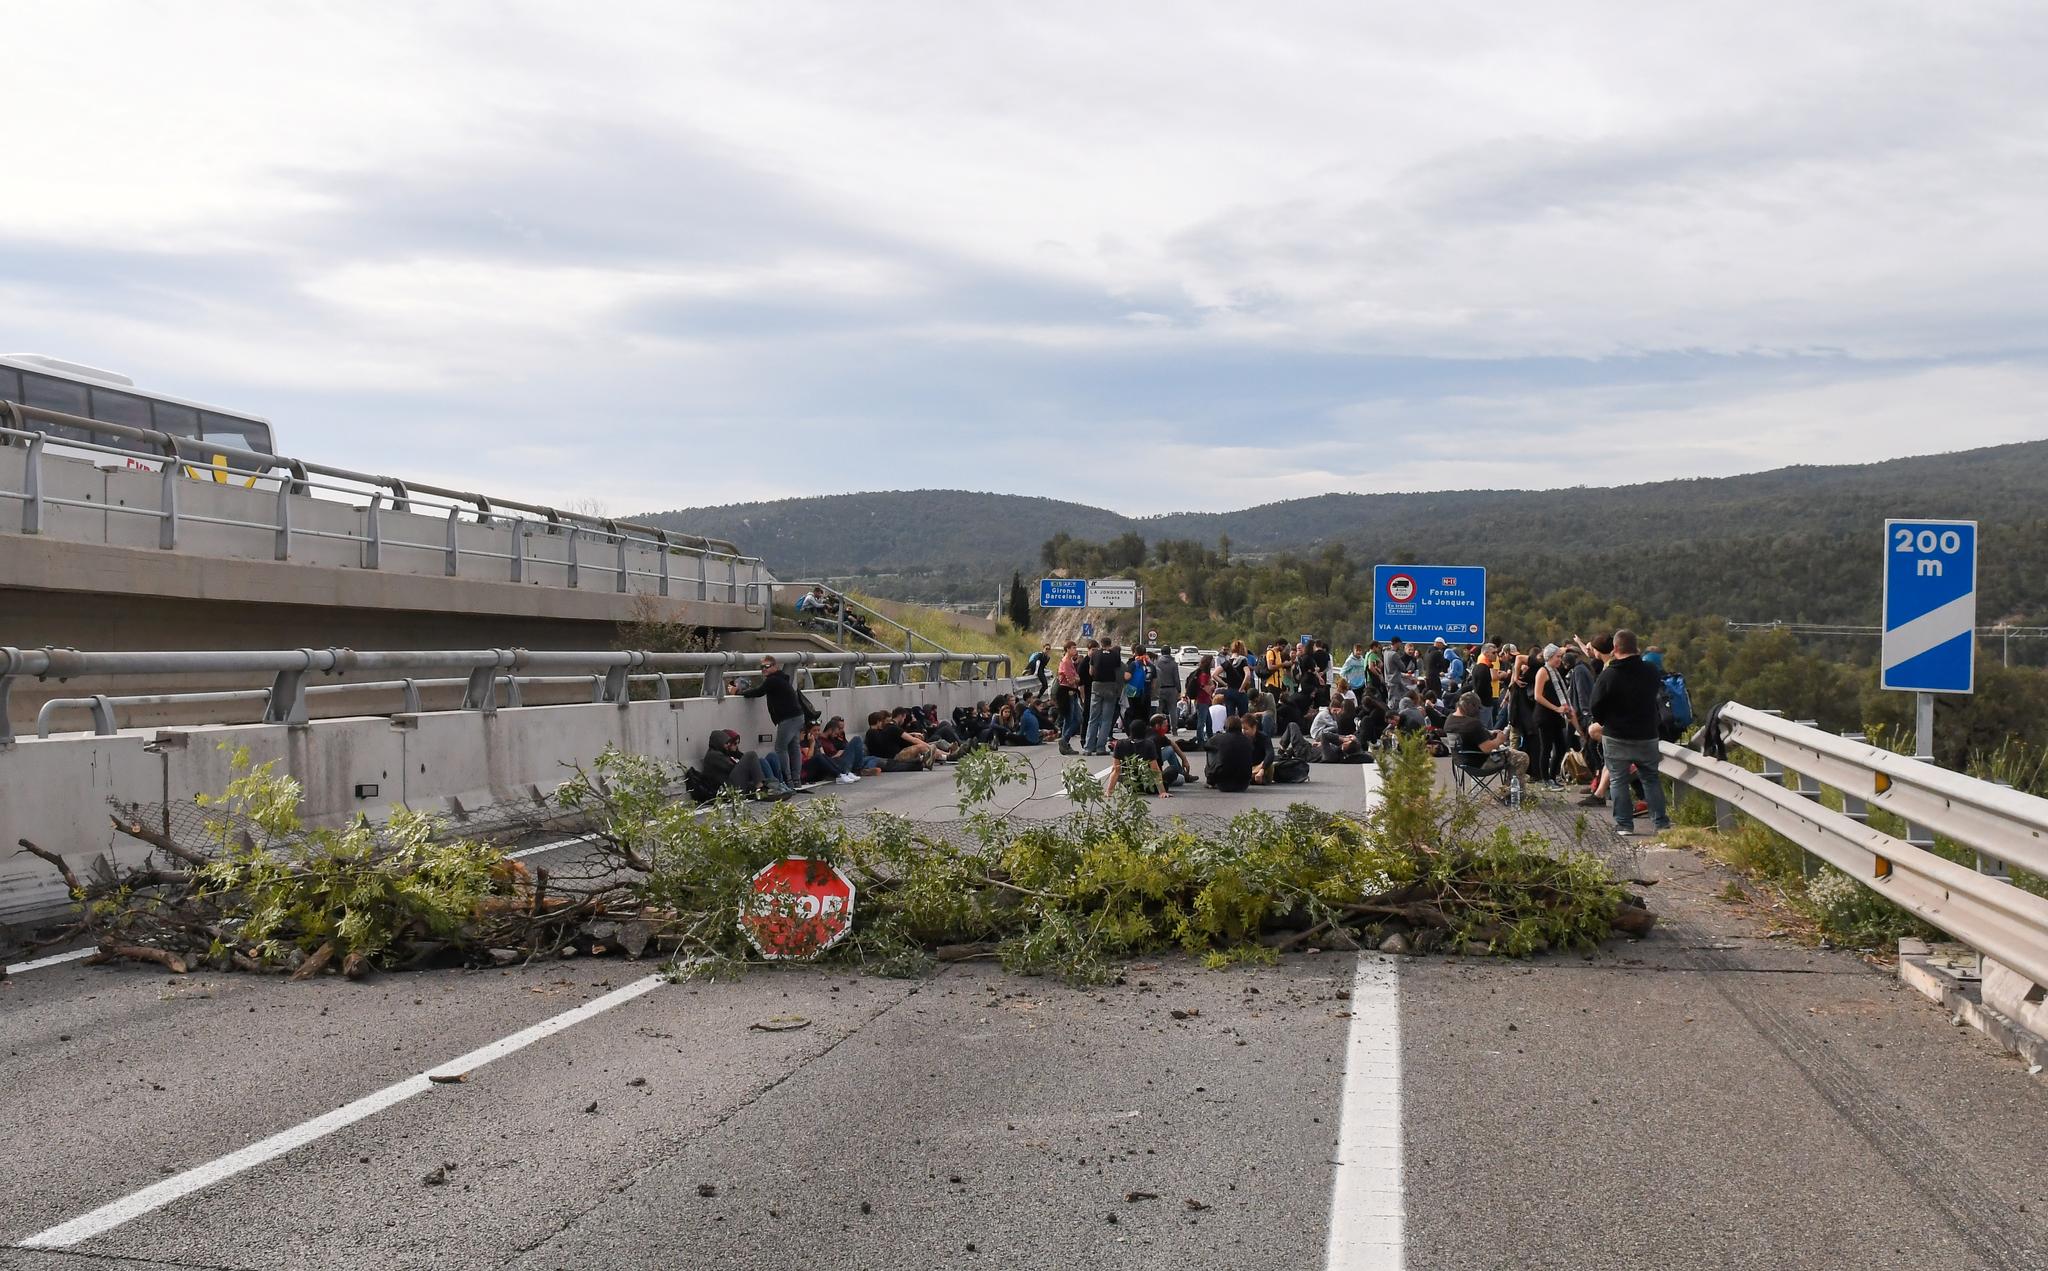 Katalanske demonstranter sperret en motorvei nær grensen mellom Spania og Frankrike fredag.